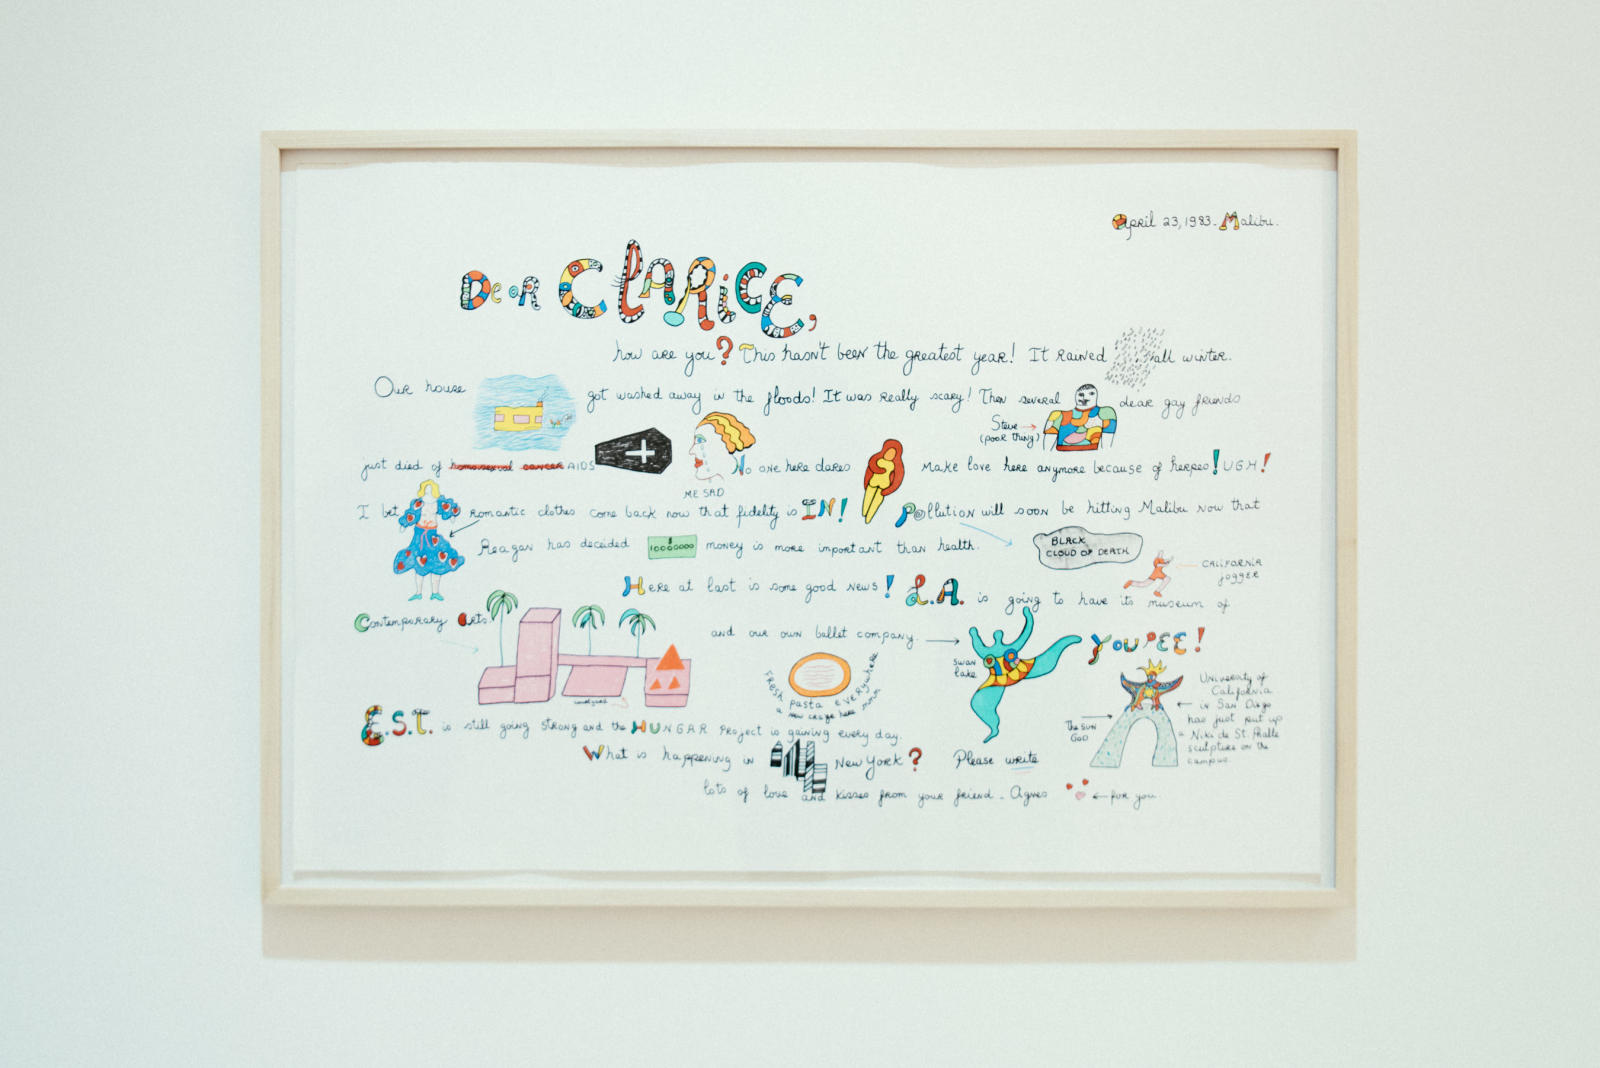 The art works04 of Niki de Saint Phalle